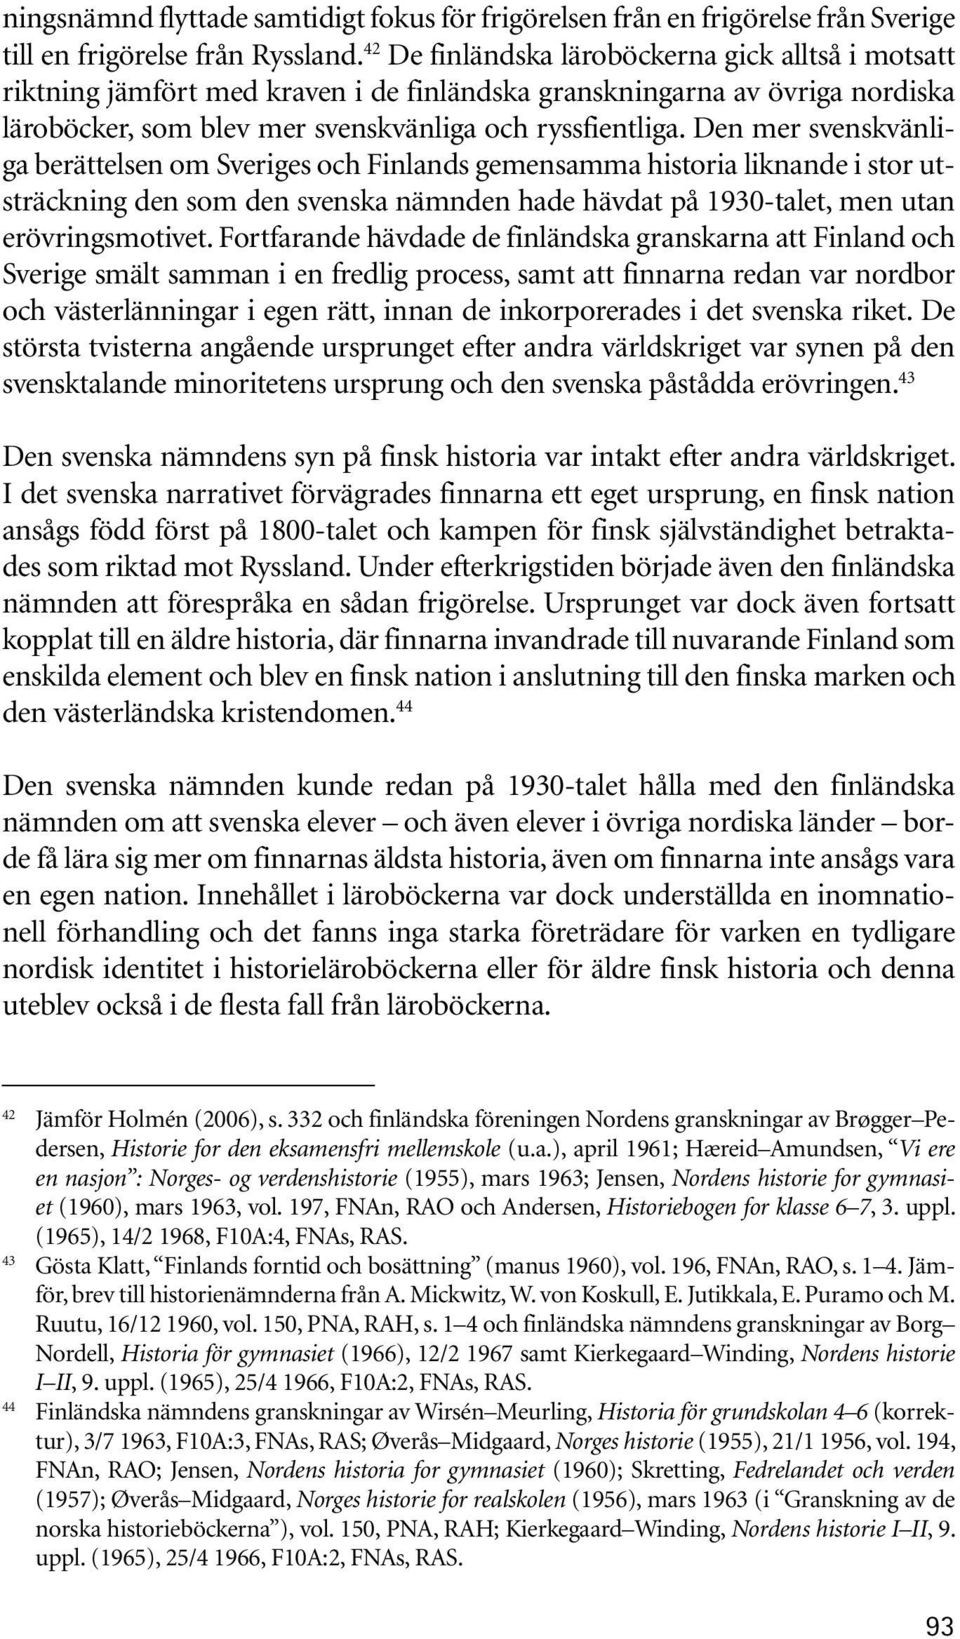 Den mer svenskvänliga berättelsen om Sveriges och Finlands gemensamma historia liknande i stor utsträckning den som den svenska nämnden hade hävdat på 1930-talet, men utan erövringsmotivet.